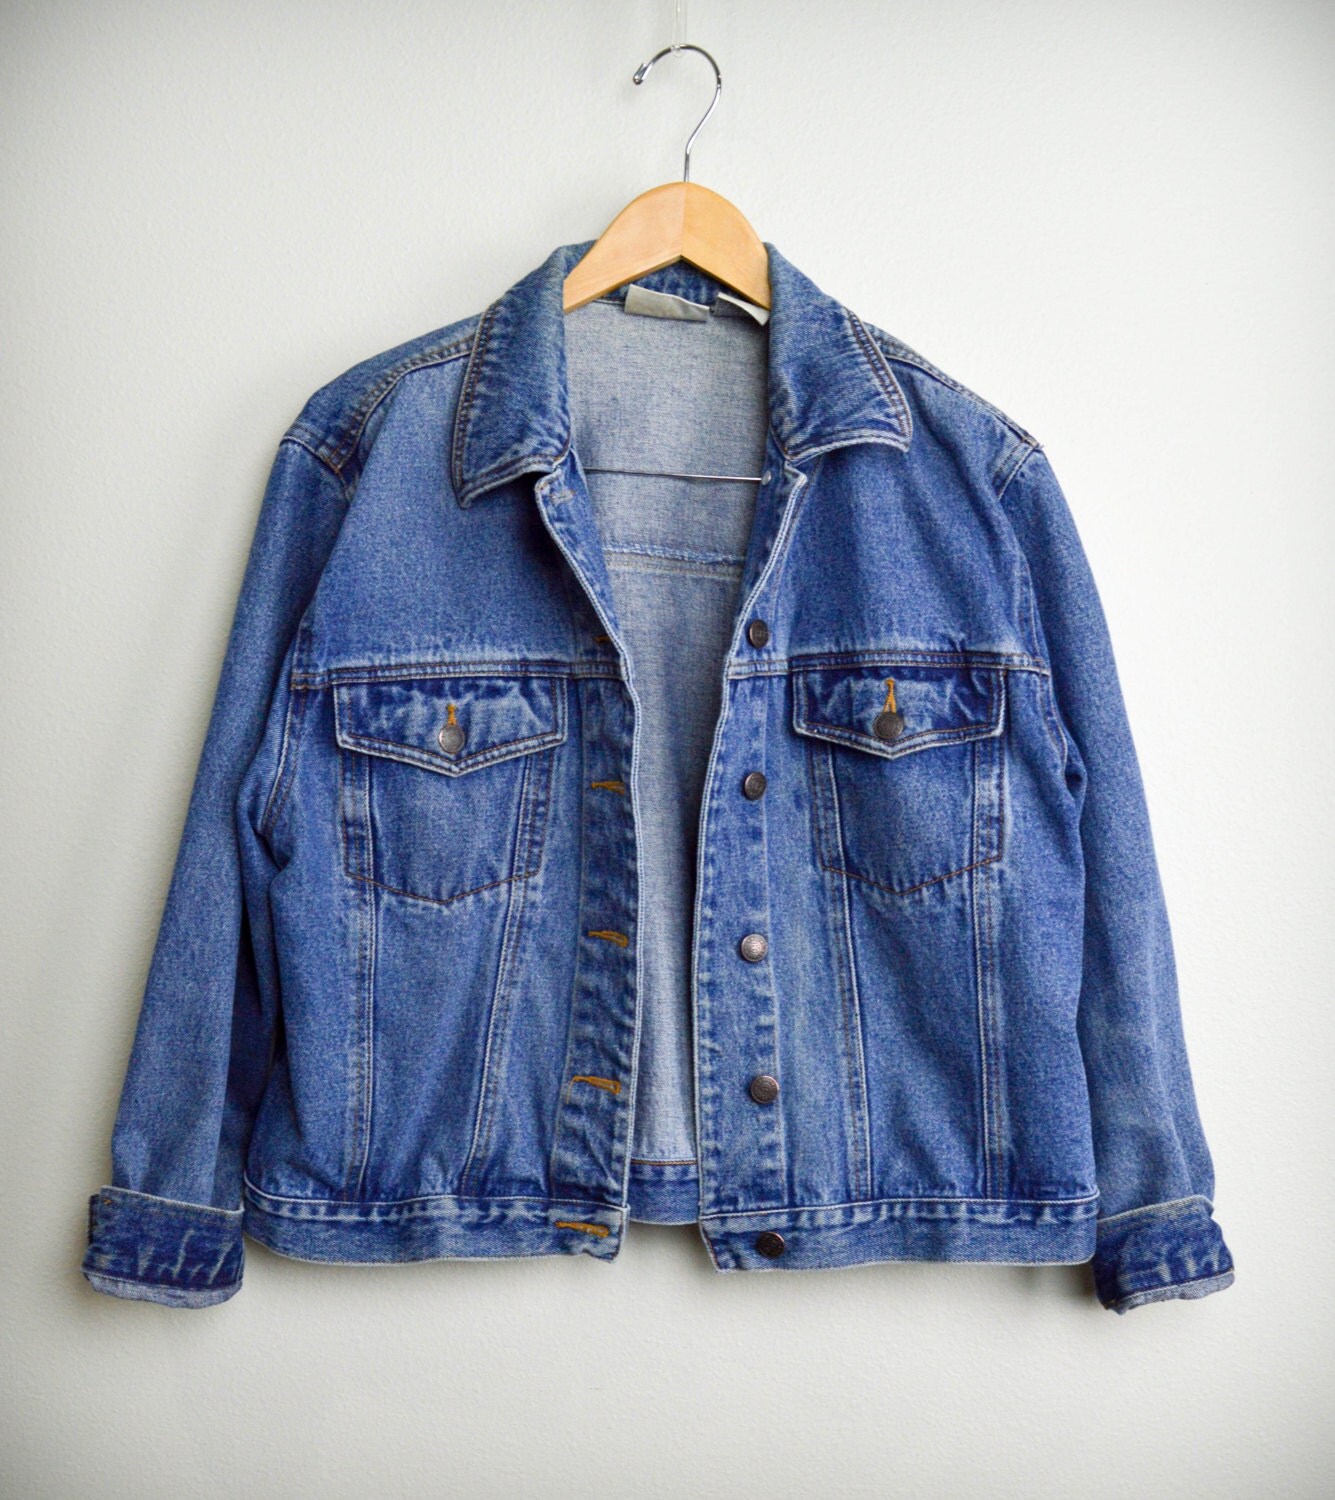 Vintage Jean Jacket 90s grunge oversize denim jacket 90s